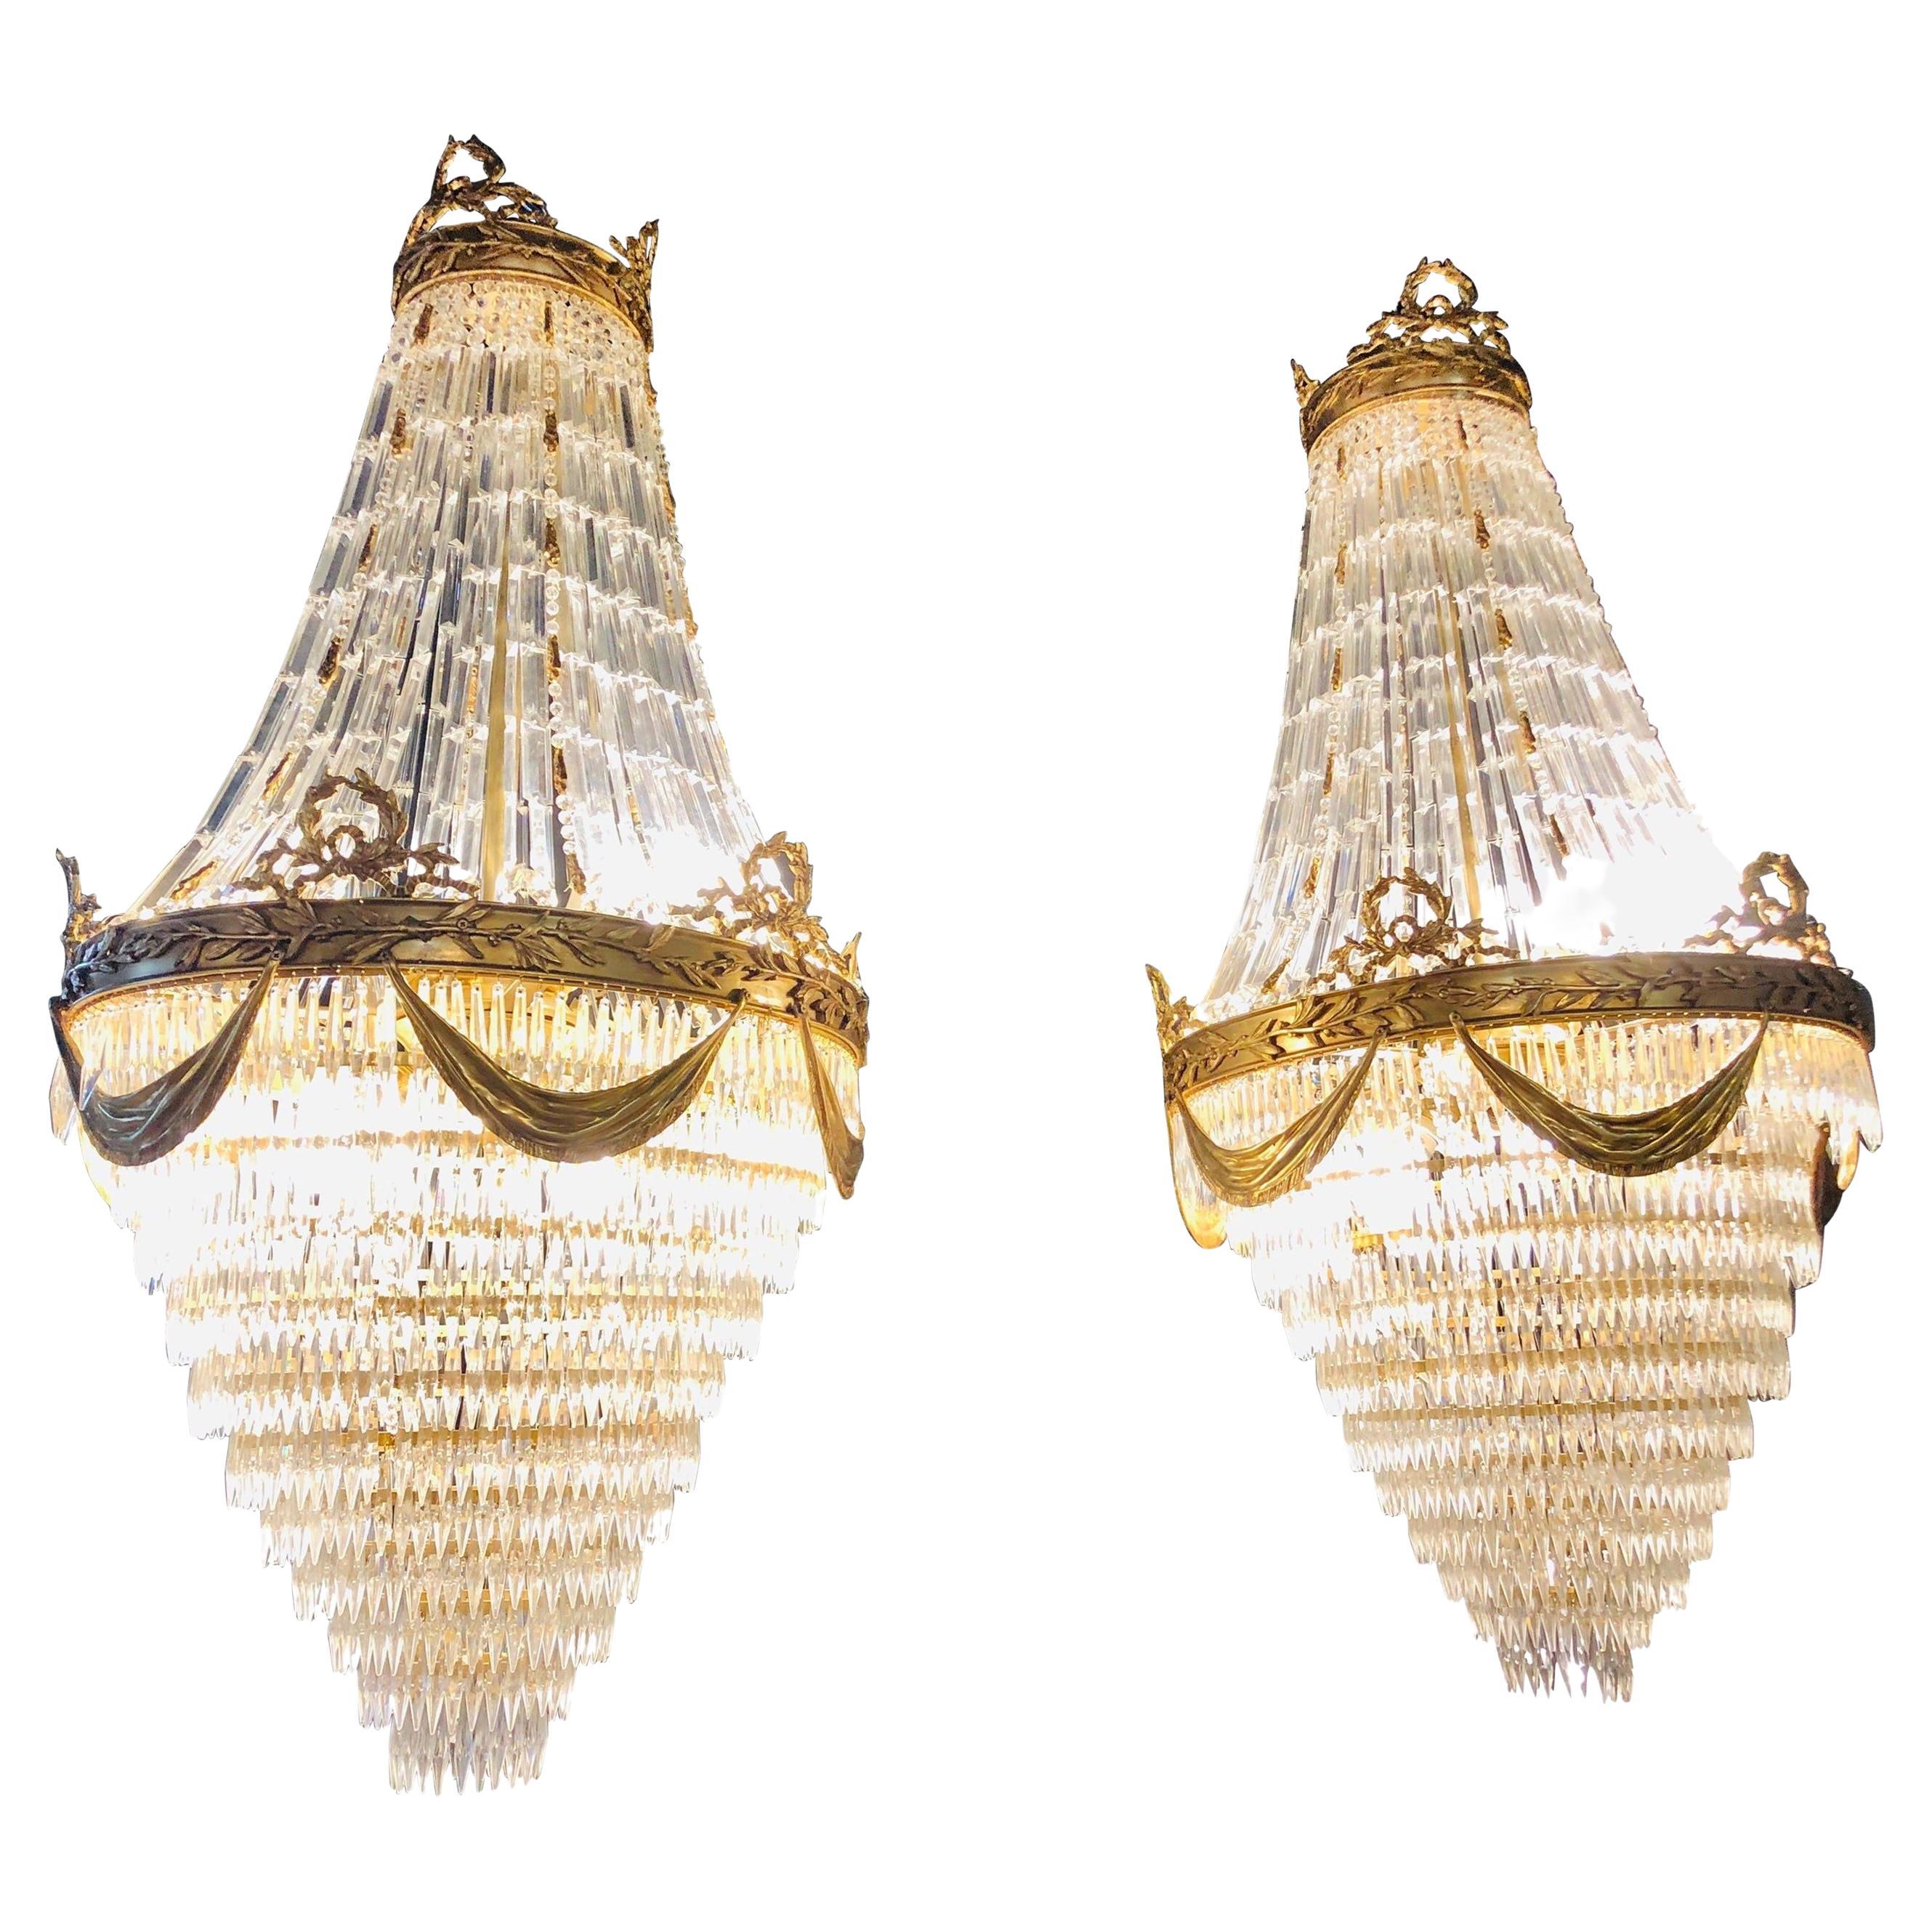 Paar palastartige Kronleuchter aus Bronze und Kristall im Louis-XVI.-Stil mit Swag-Design